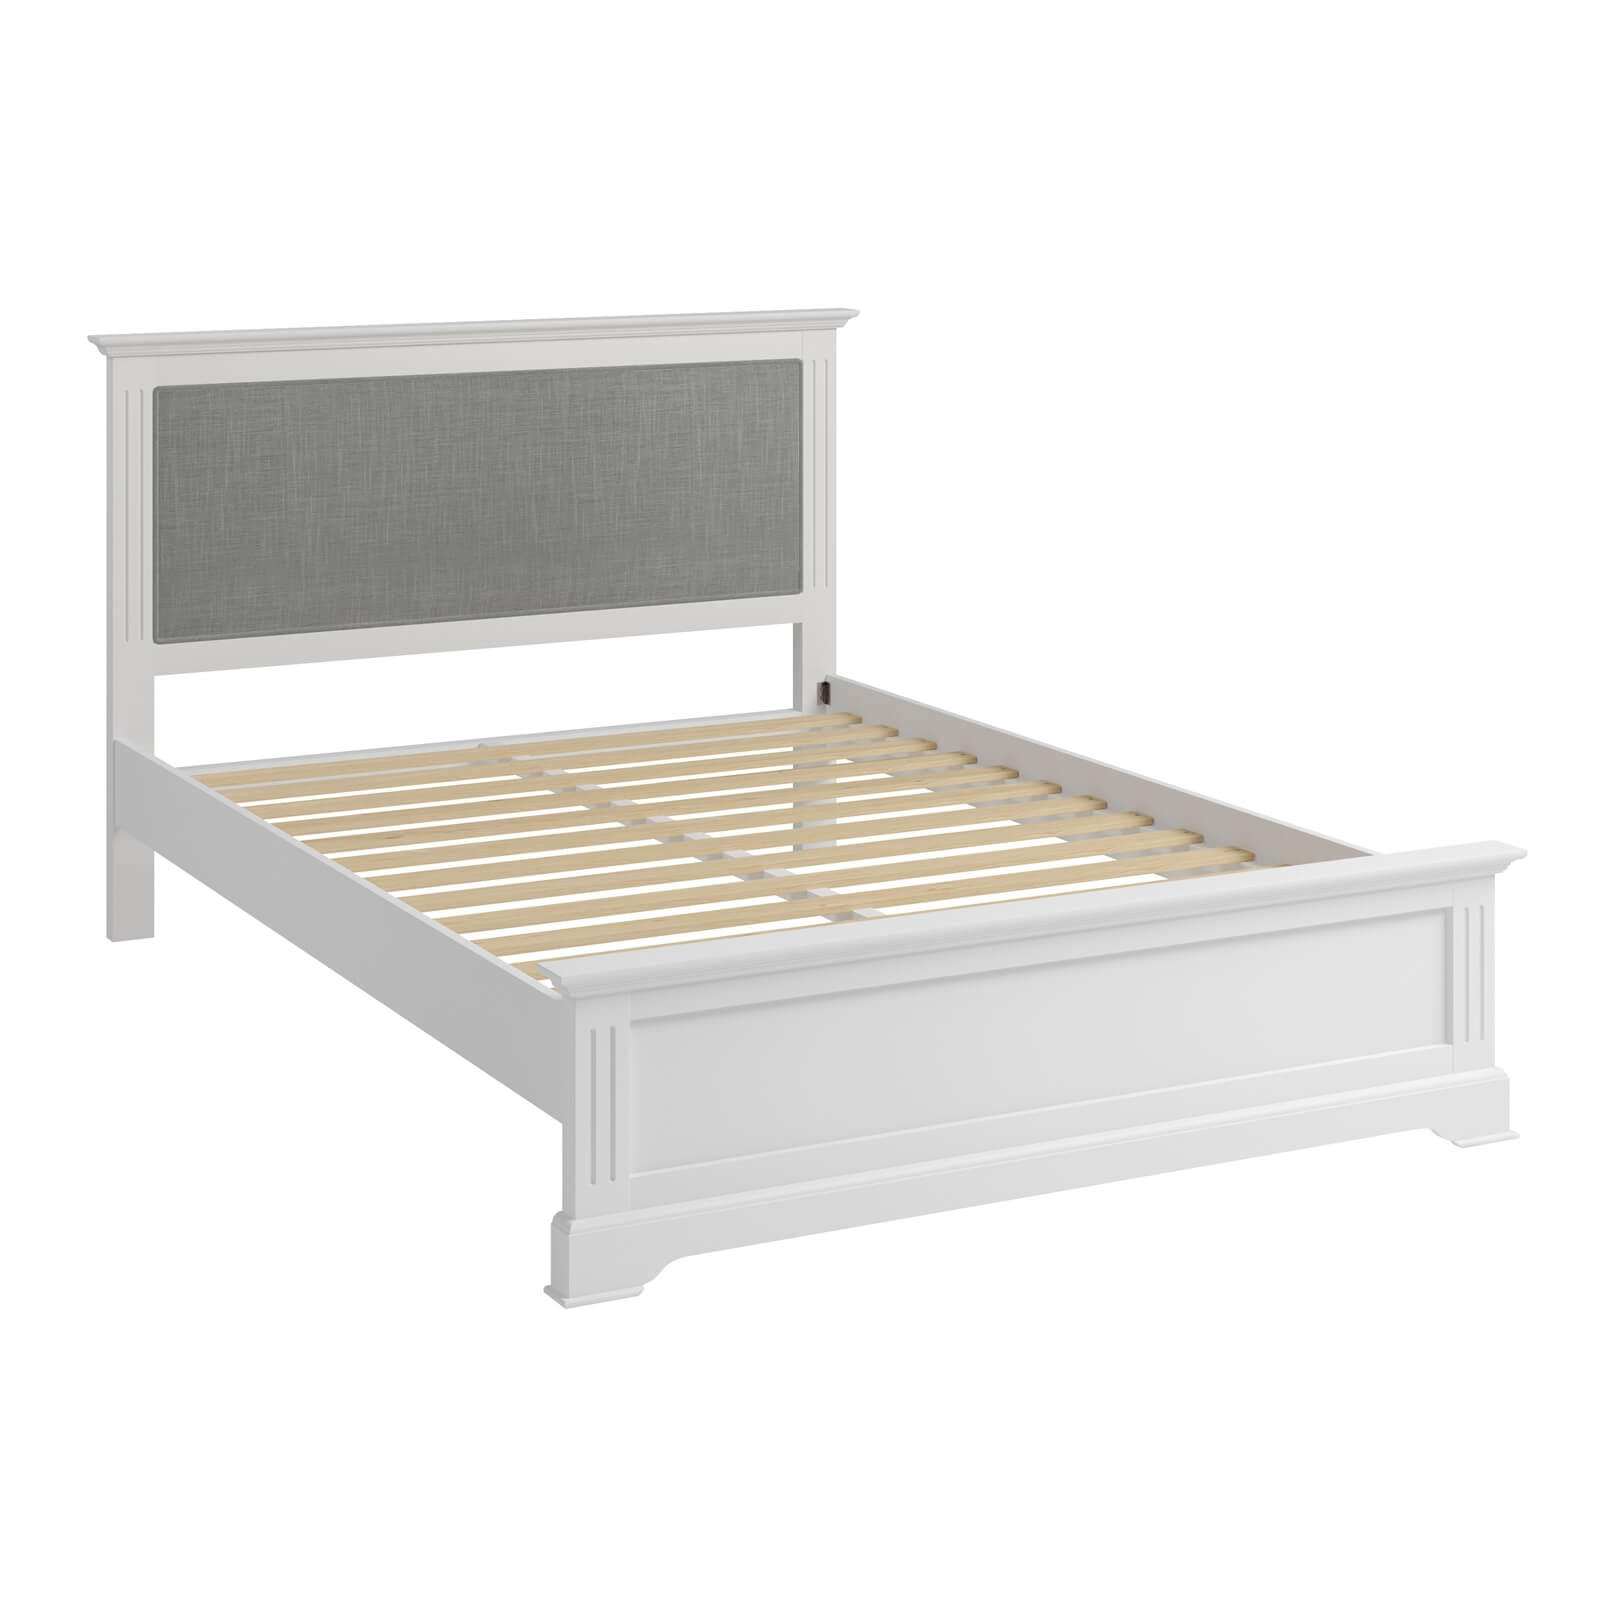 Camborne Kingsize Bed Frame - White